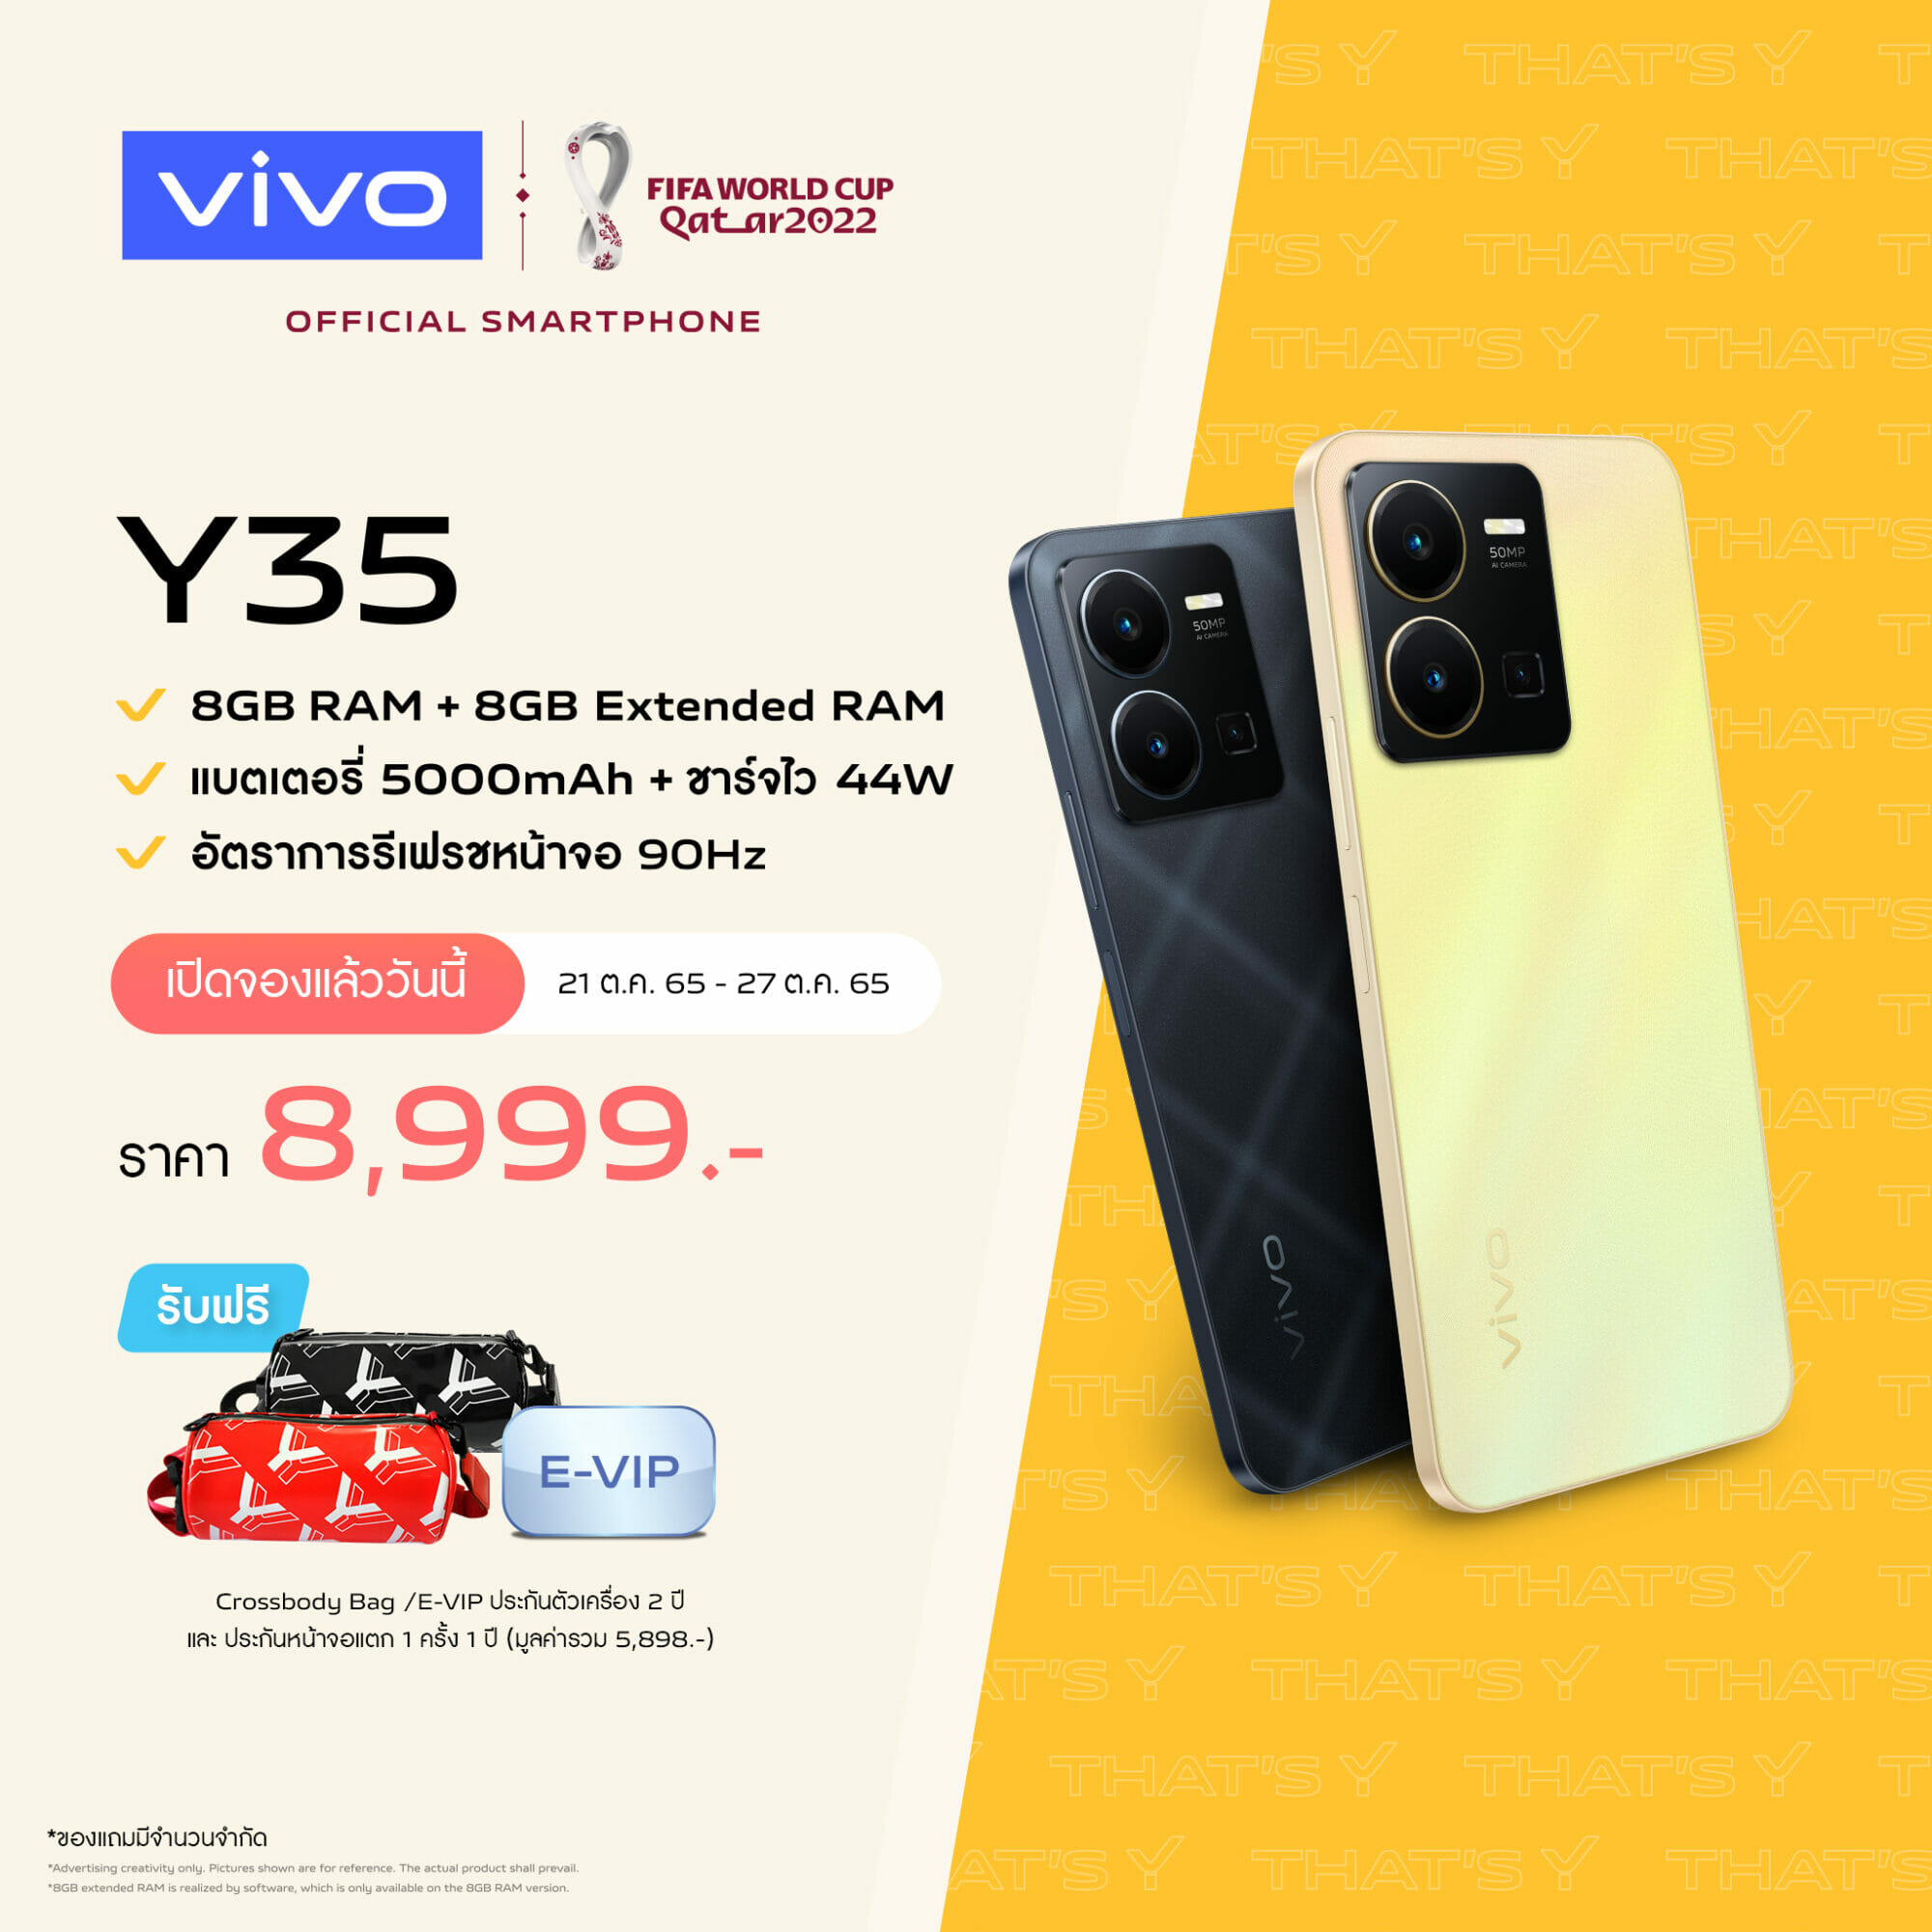 vivo เปิดพรีออเดอร์ Y35 สมาร์ตโฟนรุ่นใหม่ล่าสุดอย่างเป็นทางการ ในราคา 8,999 บาท พร้อมรับฟรีของพรีเมียมมูลค่ารวมกว่า 5,898 บาท 13